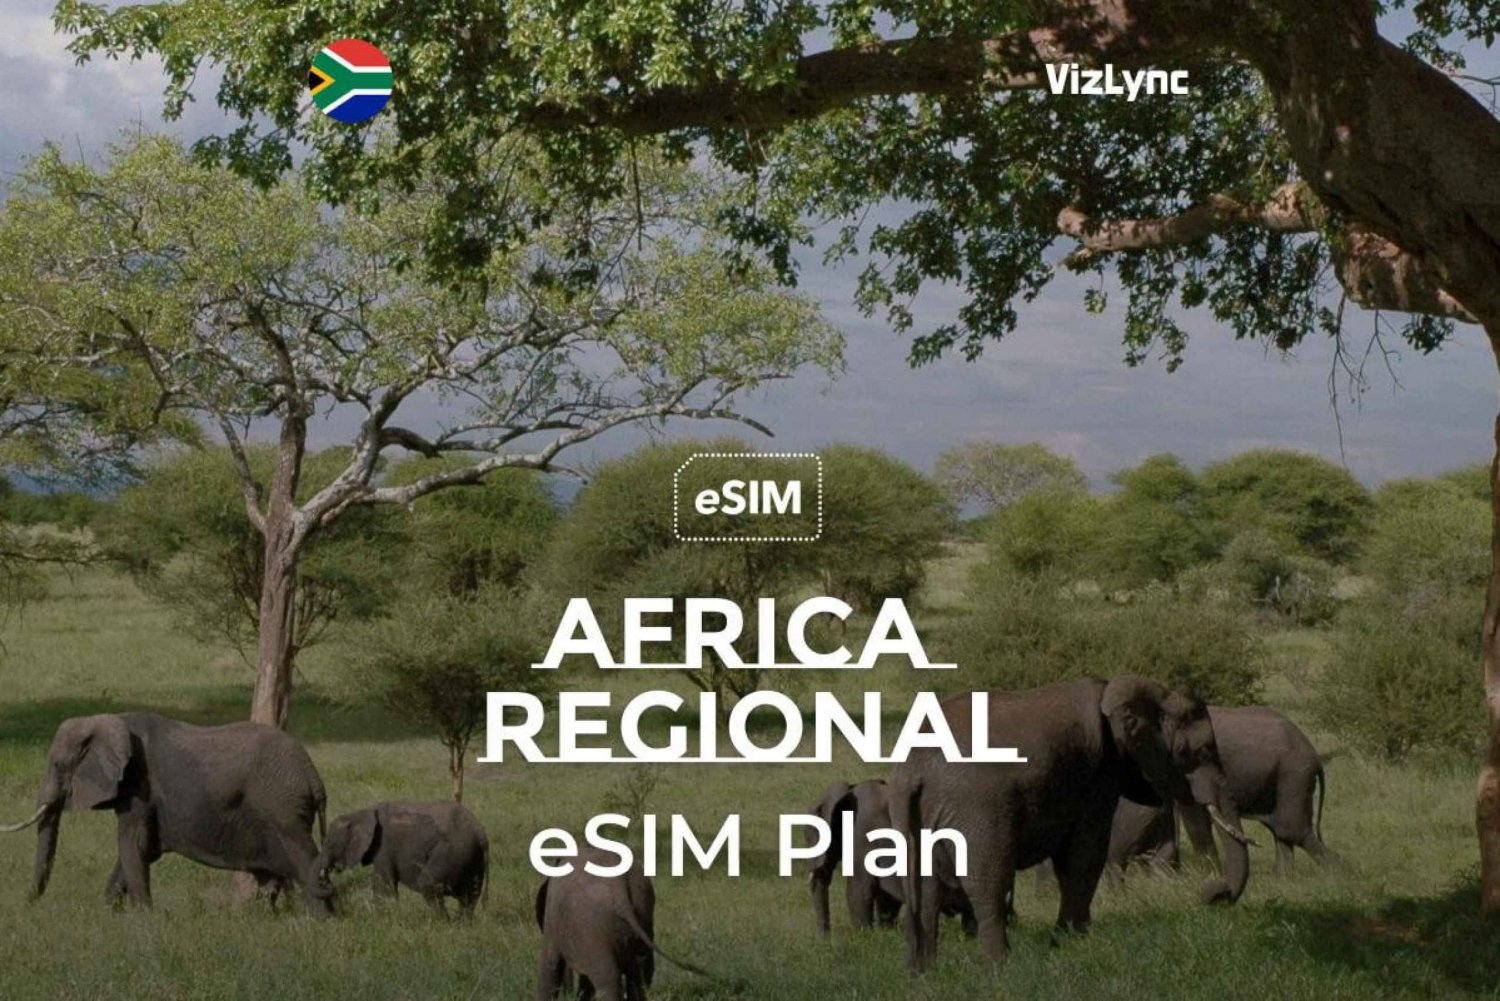 Najlepszy eSIM podróżny dla Afryki z 10 GB danych przez 30 dni”